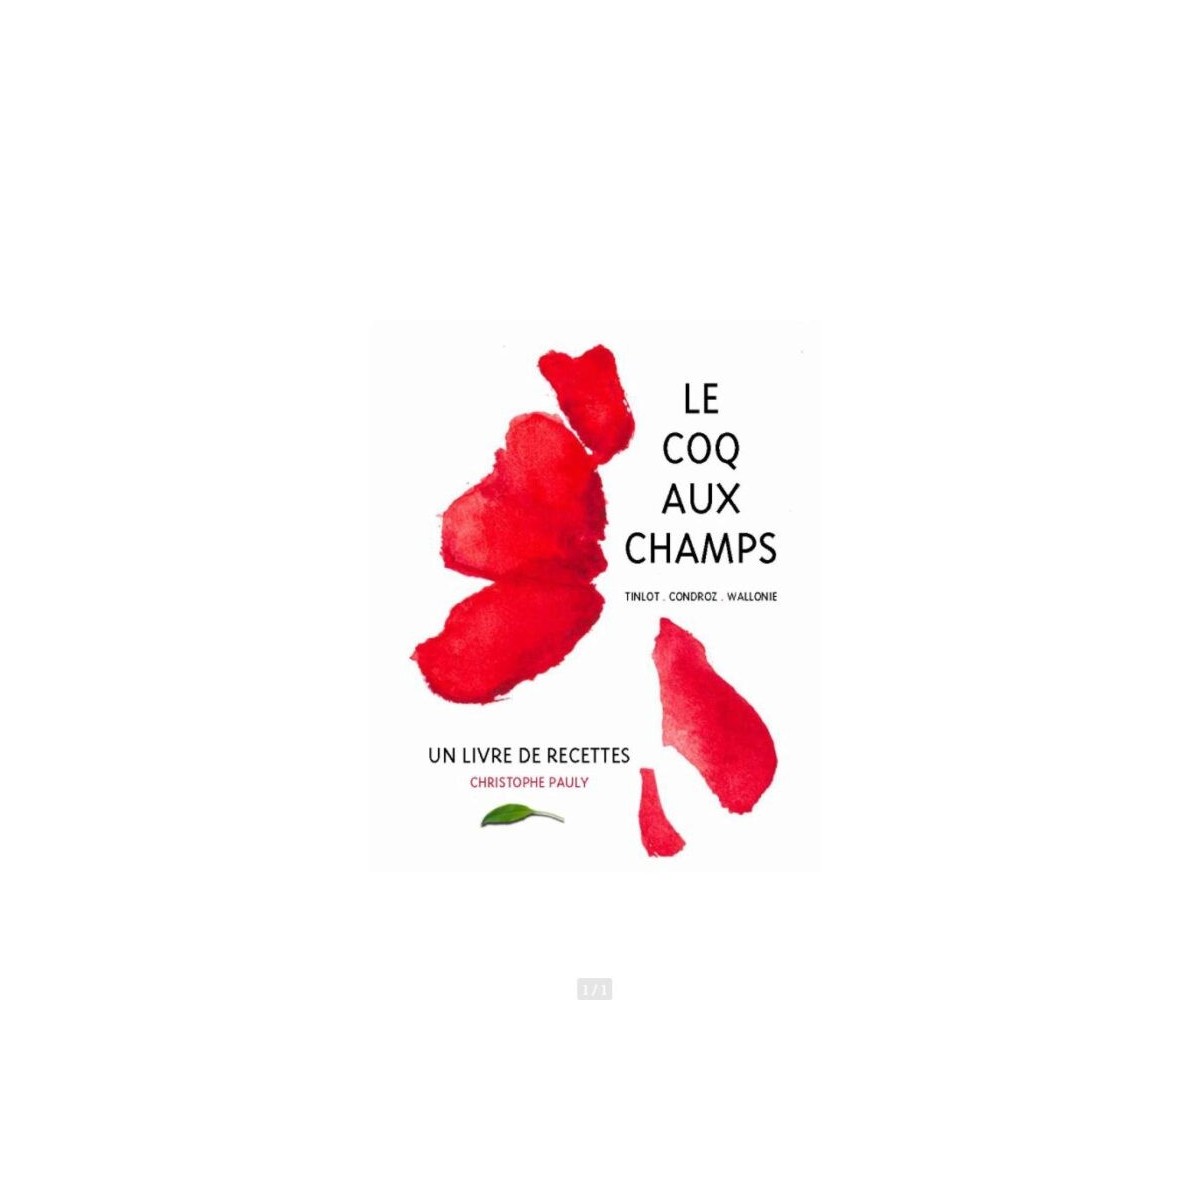 FFLE COQ AUX CHAMPS DE CHRISTOPHE PAULY-1 MICHELINED.RENAISSANCE LIVRE